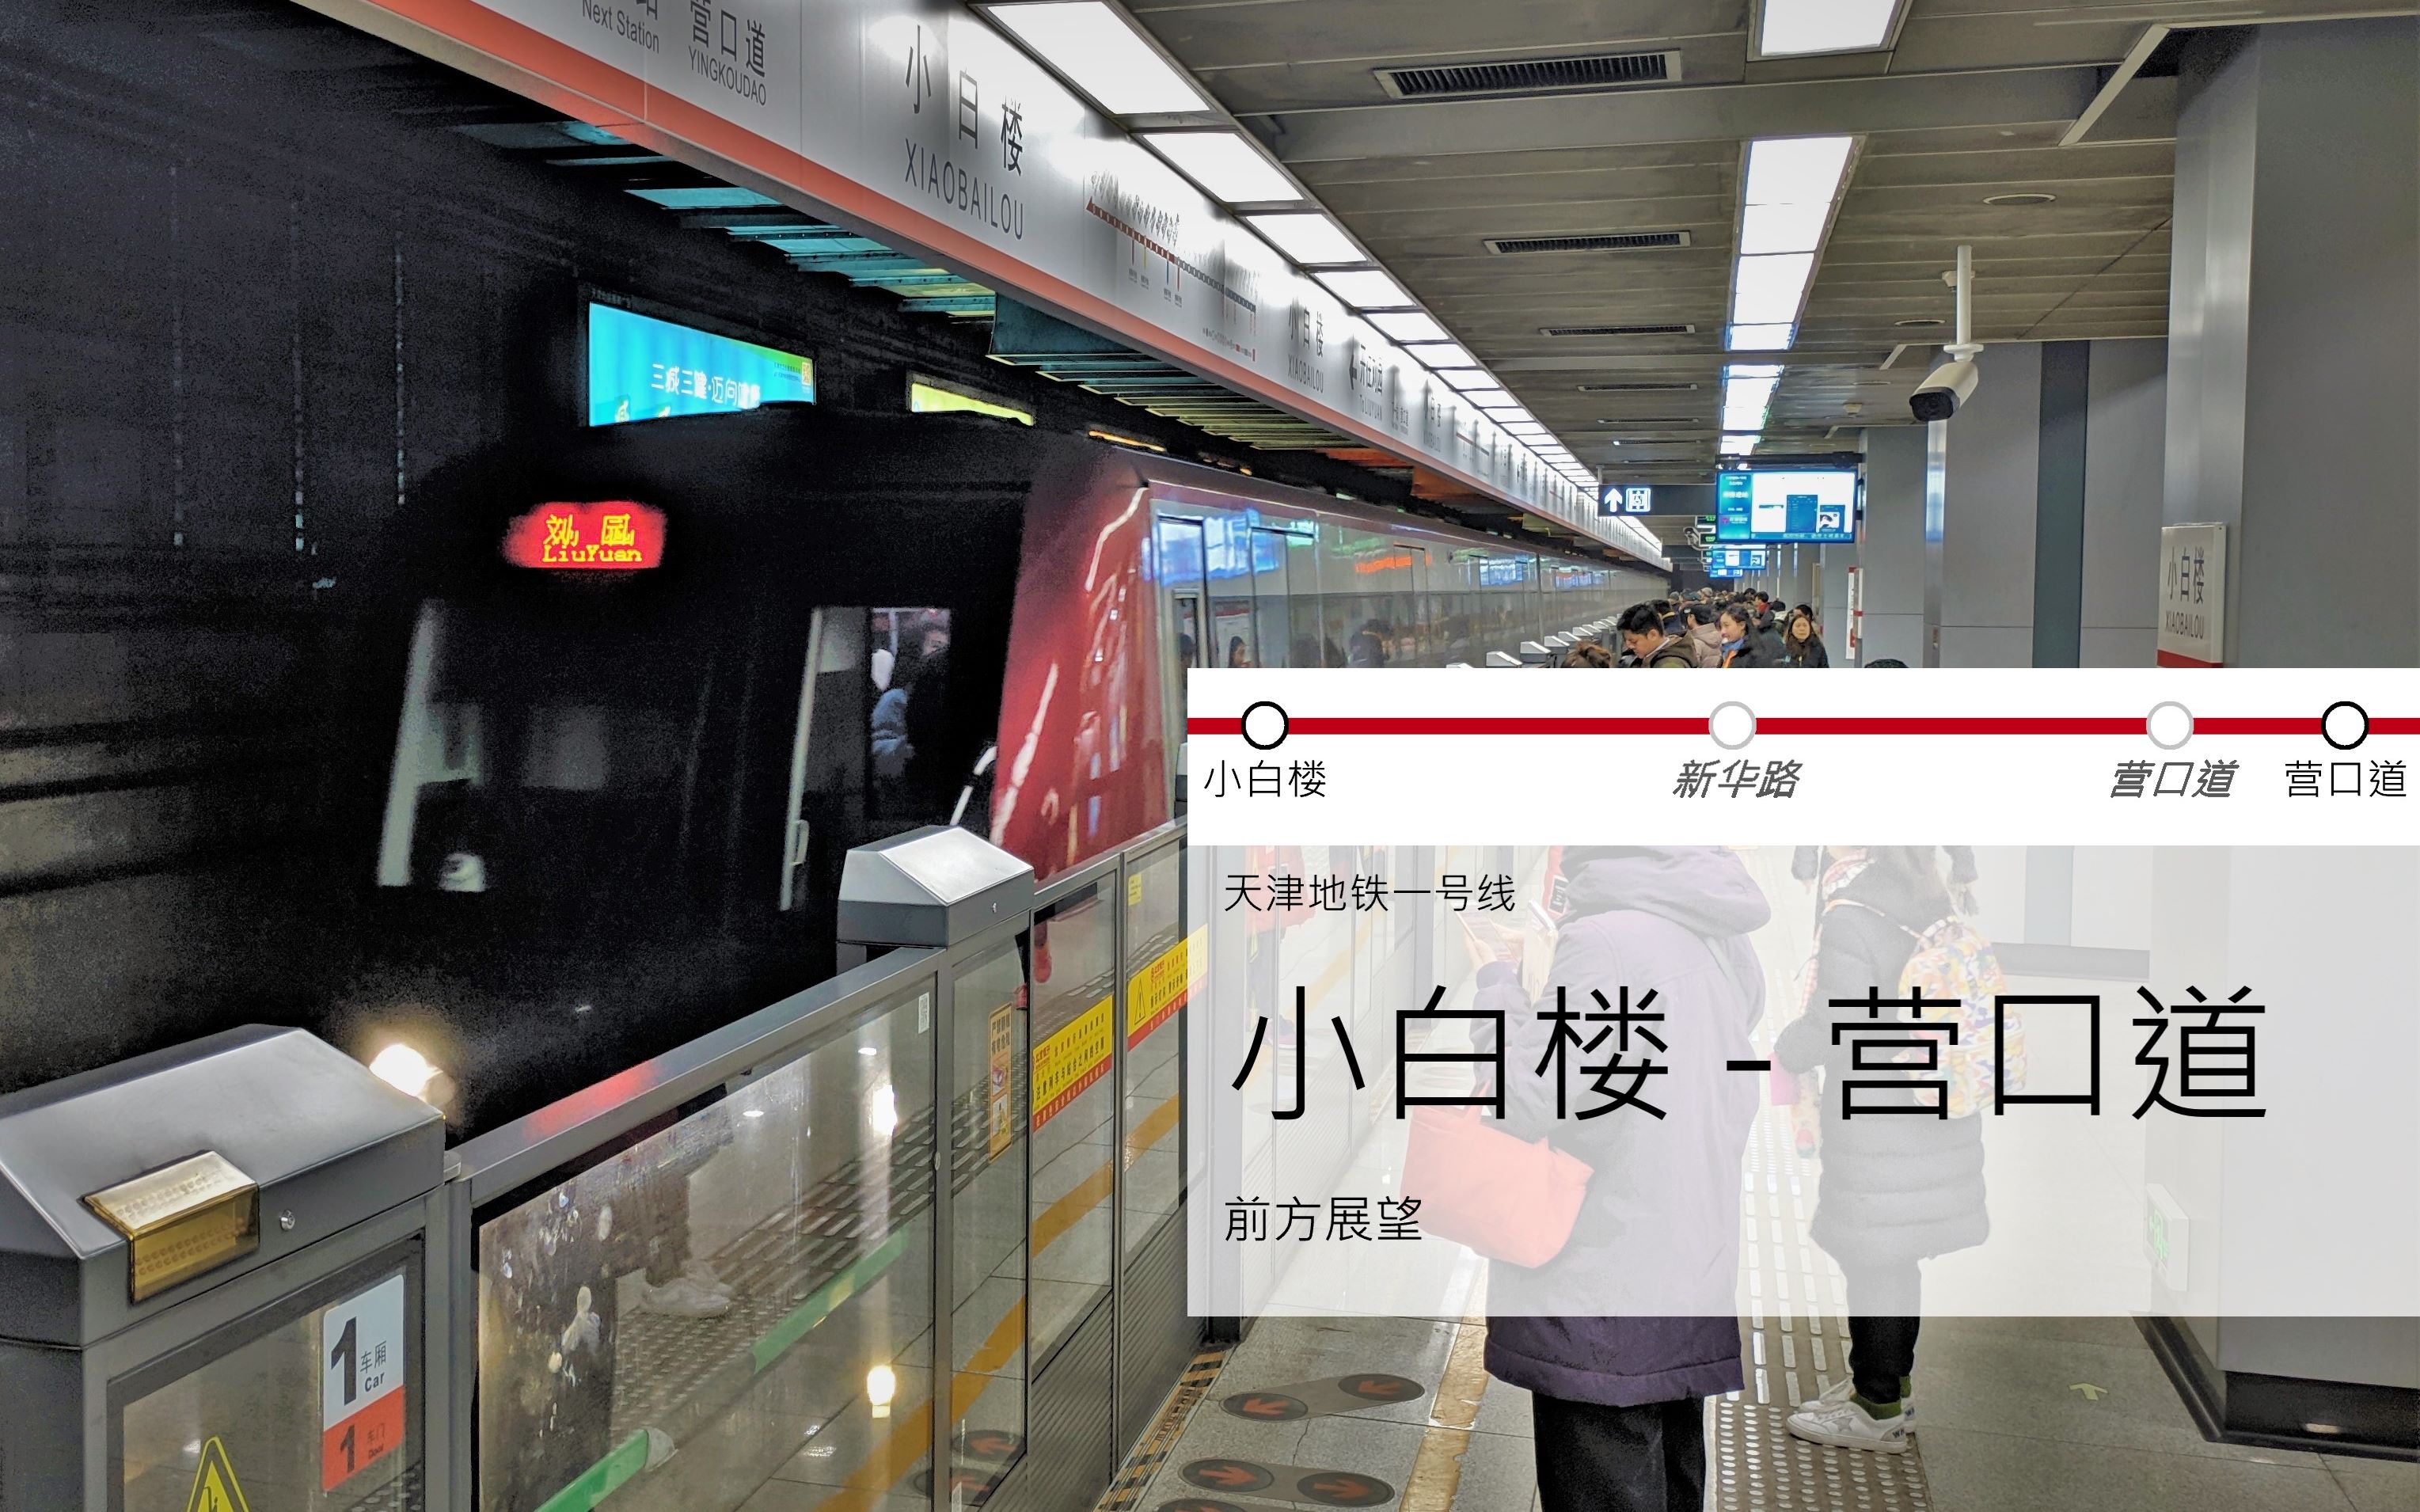 废弃车站探寻天津地铁一号线小白楼营口道前方展望含既有线新华路营口